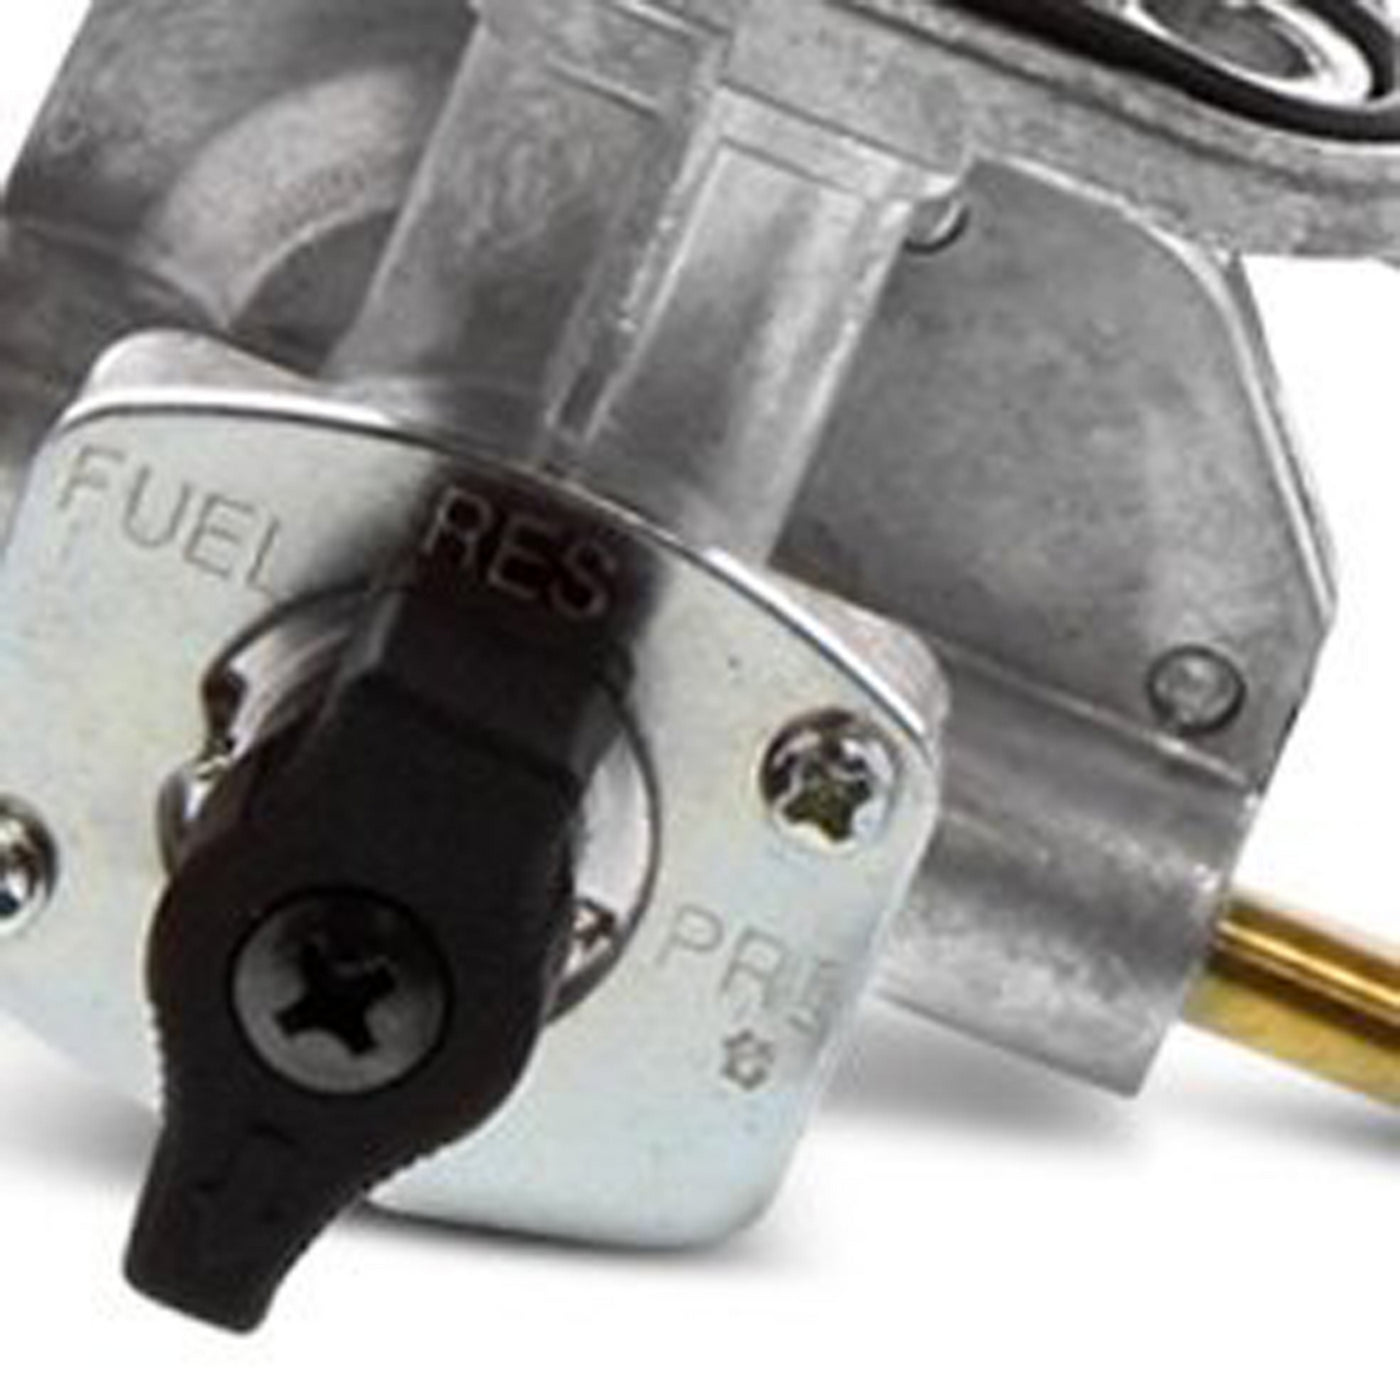 Fuel Star FS101-0124 Fuel Valve Kit #FS101-0124